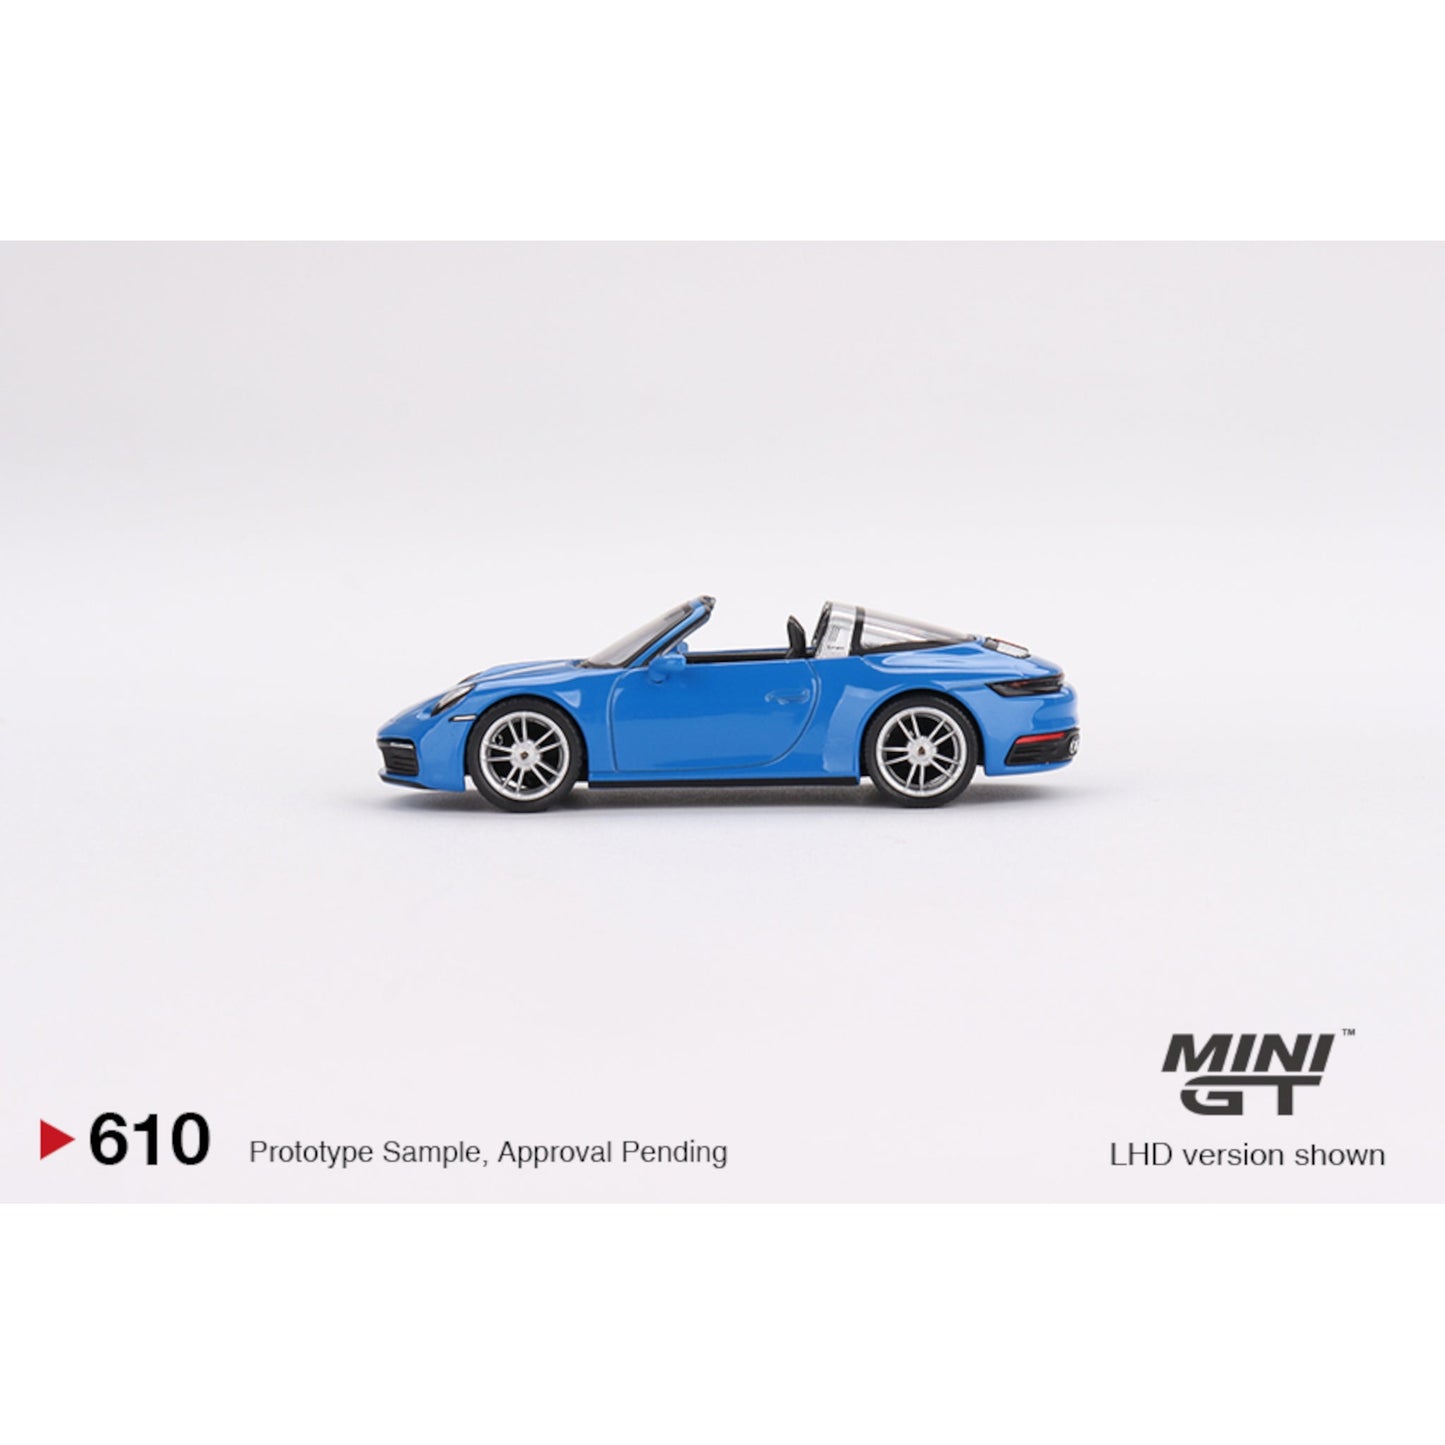 Porsche 911 Targa 4S RHD Shark Blue Mini GT 1/64 - MGT00610